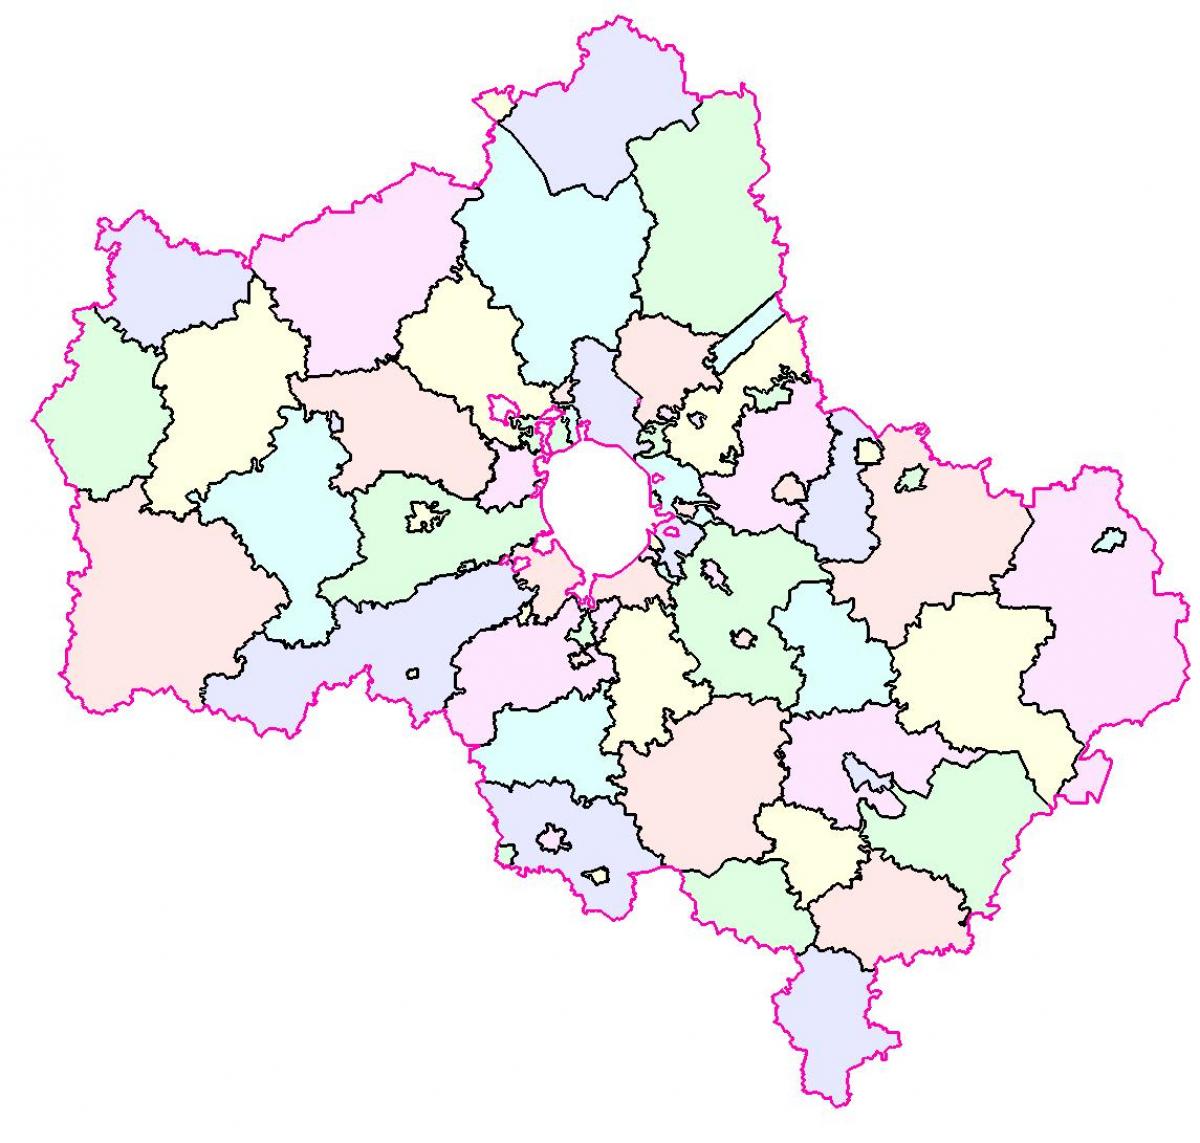 Moskva რეგიონის რუკა